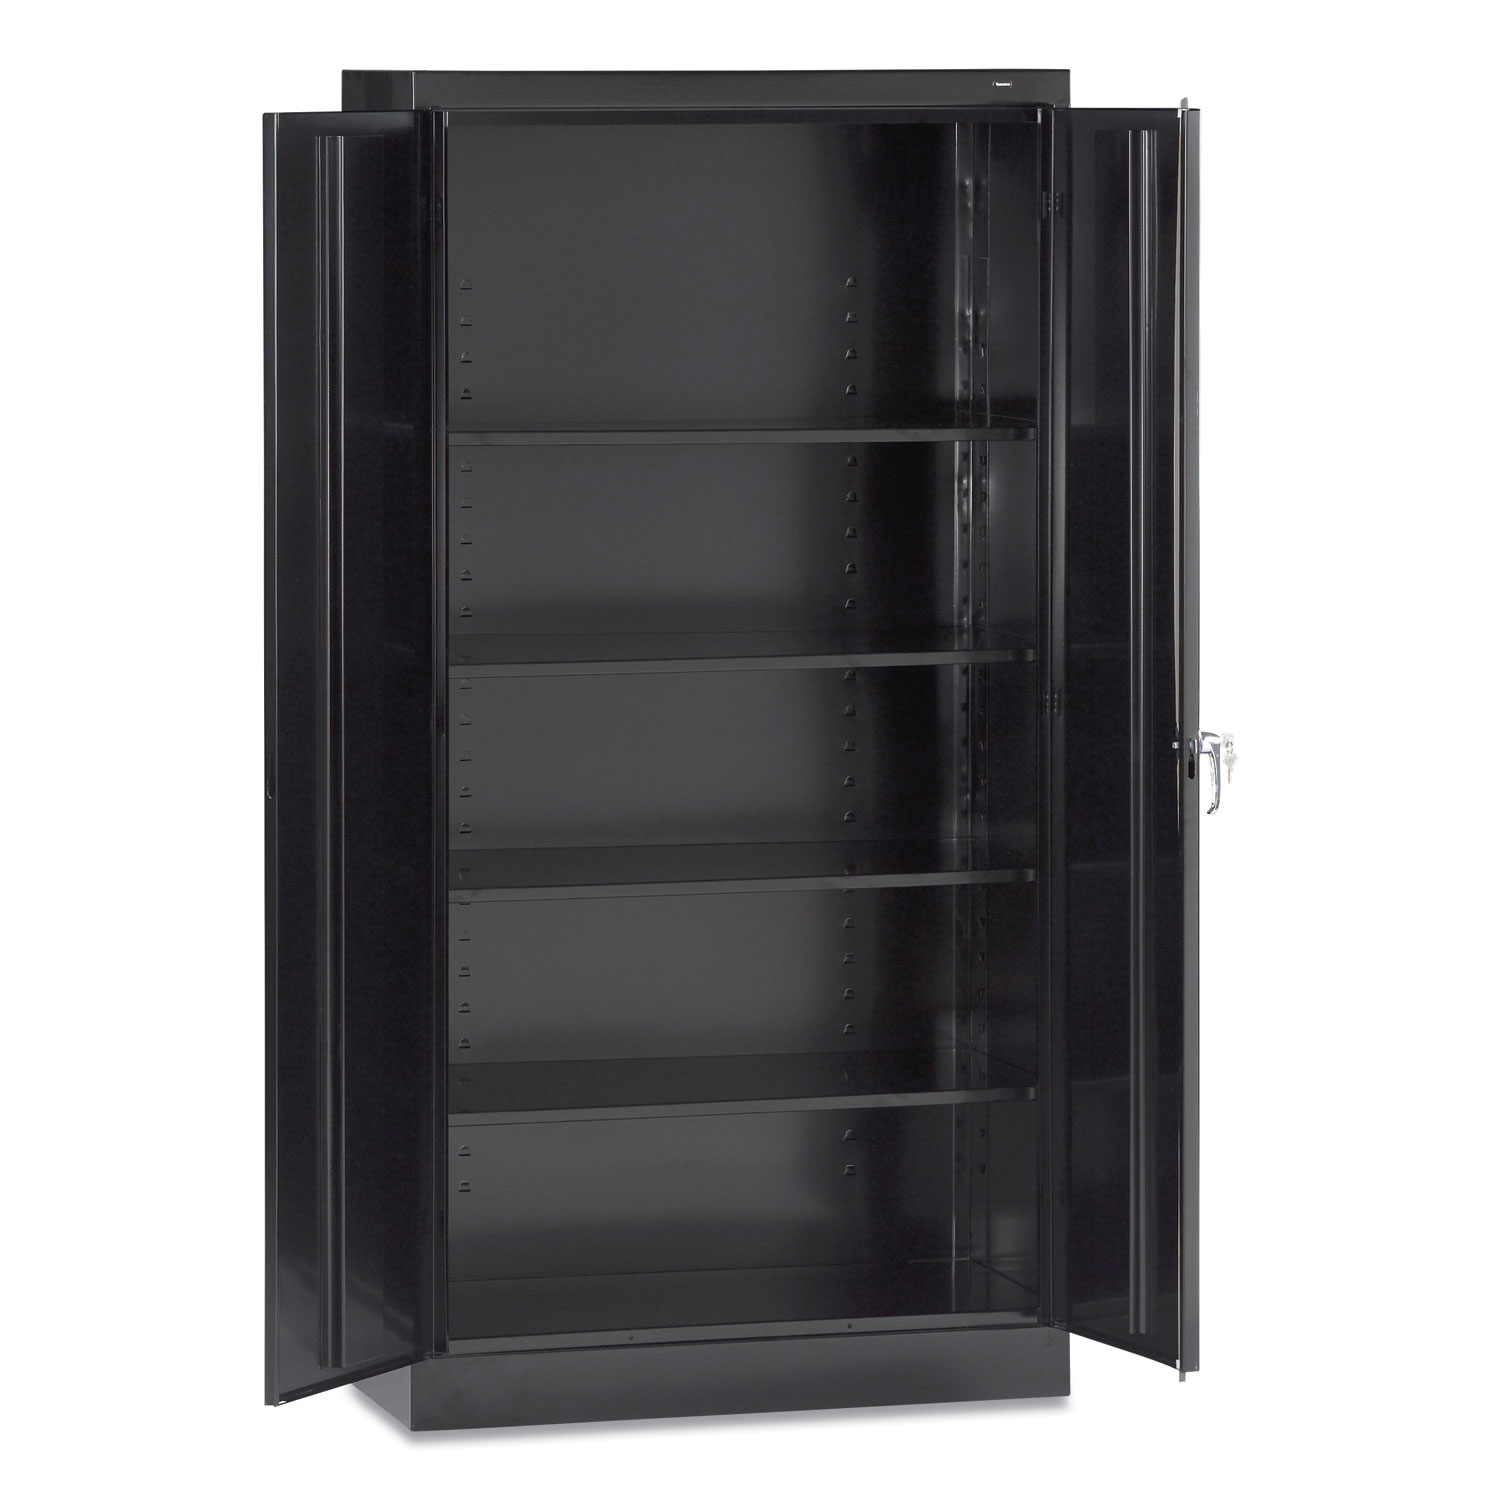  Tennsco 7218-BLK 72 High Standard Cabinet (Assembled), 36 x 18 x 72, Black (TNN7218BLK) 